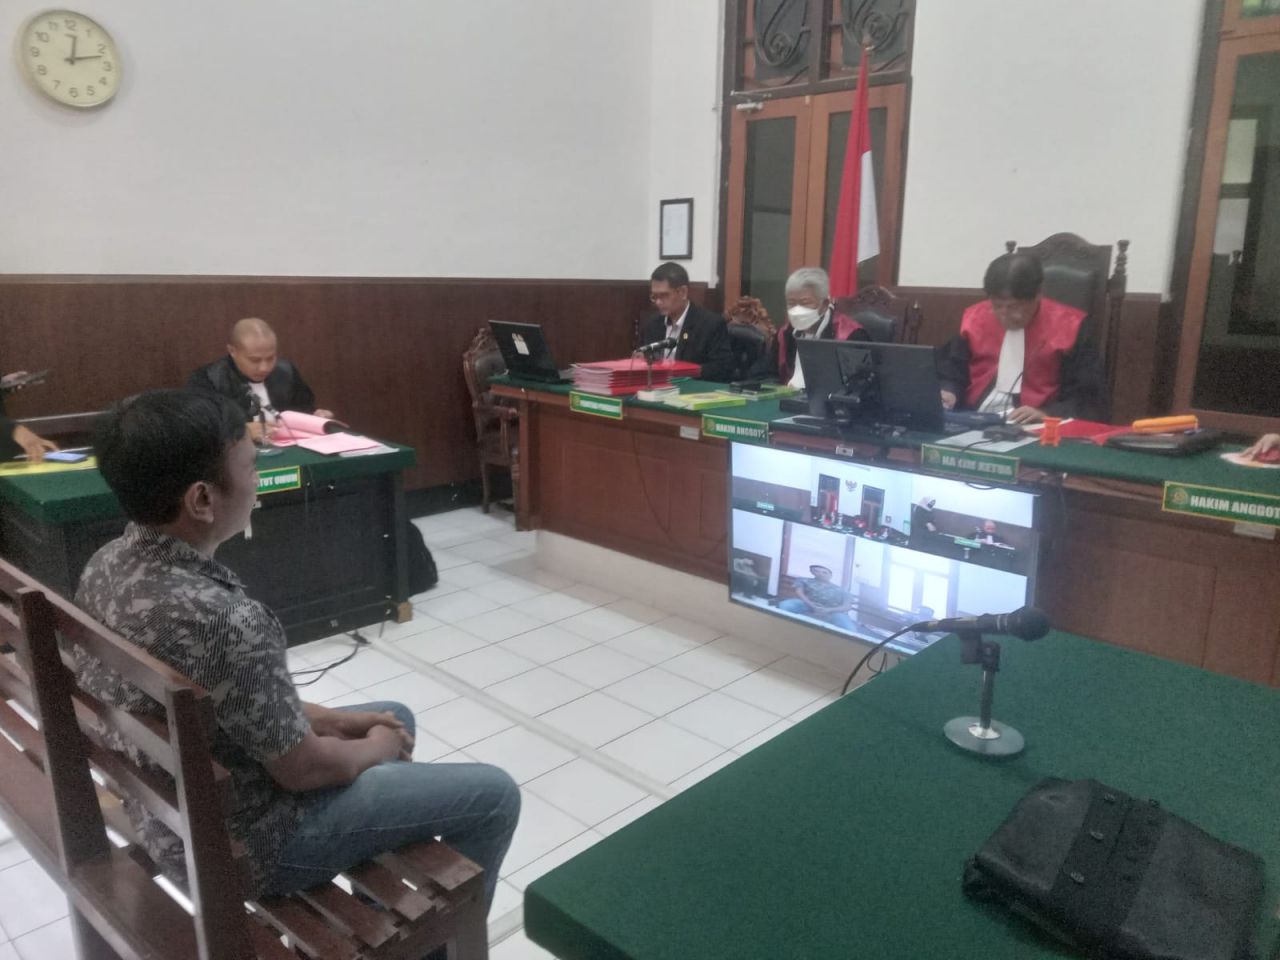 Edy Mukti Pemborong Proyek PN Surabaya Dituntut 2,5 Tahun Penjara